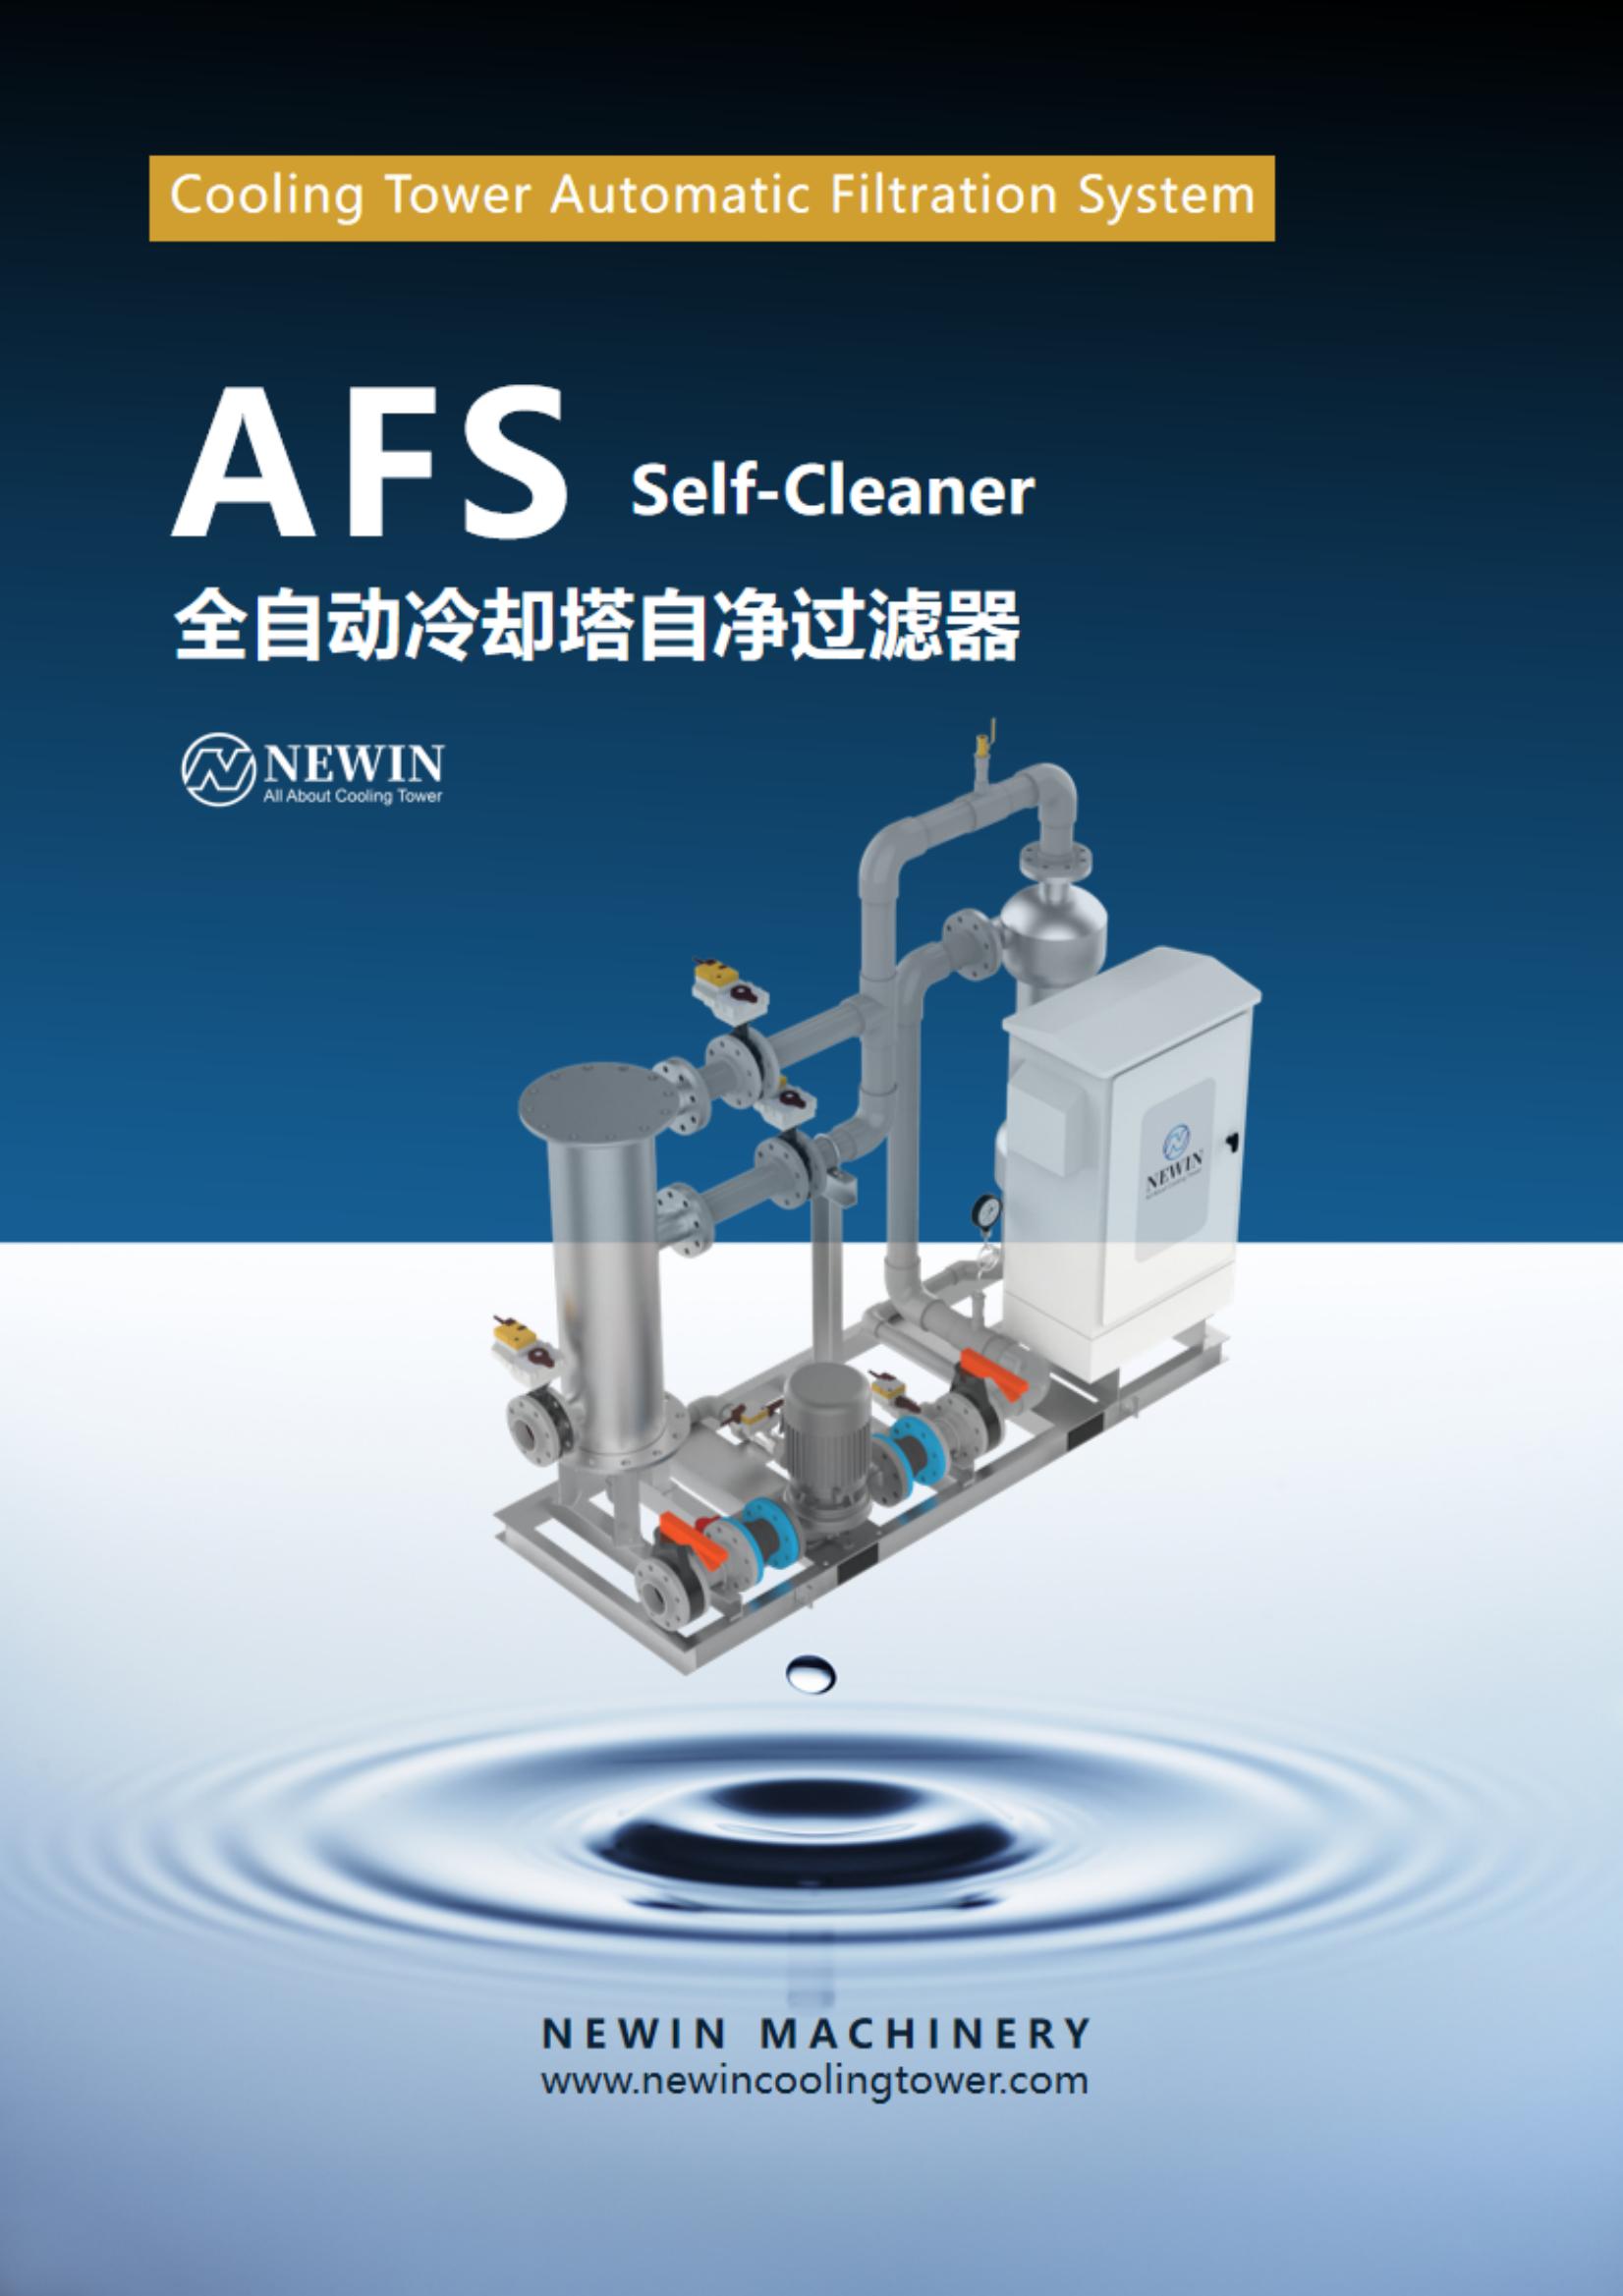 中文Chinese Brochure- AFS系列全自动冷却塔自净过滤器